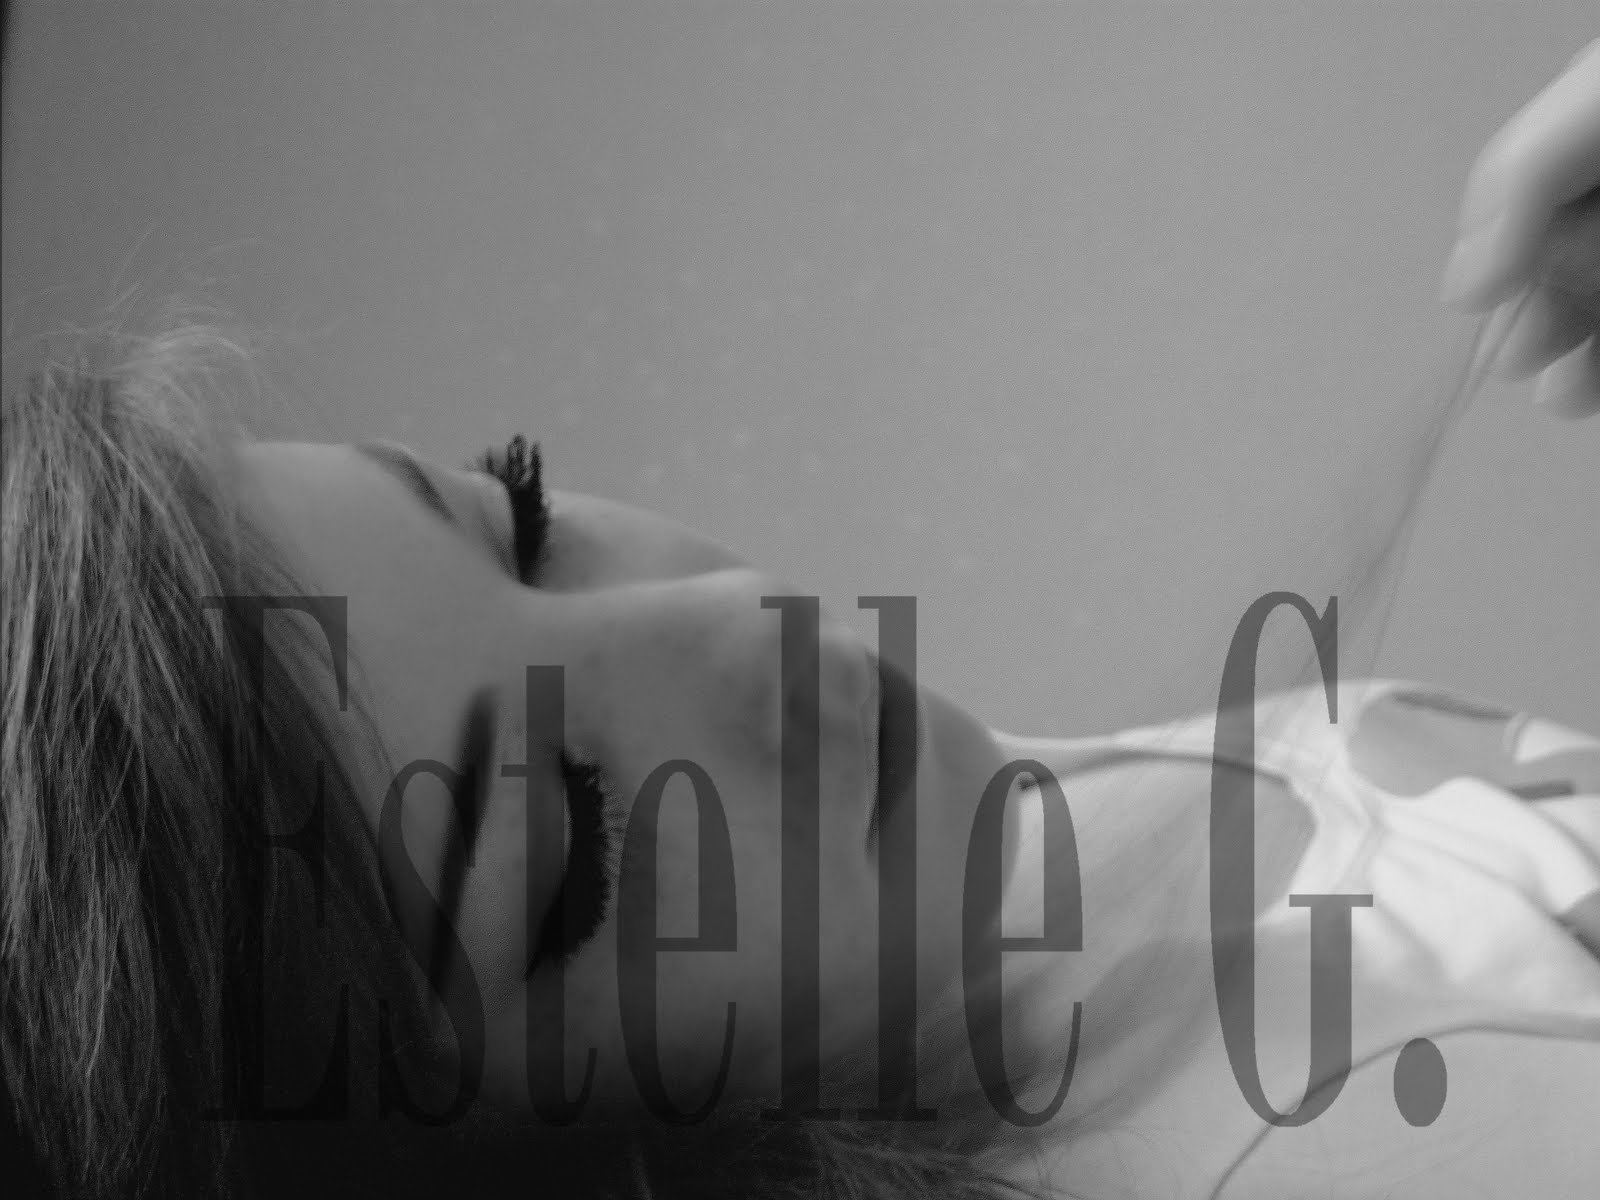 Estelle G.